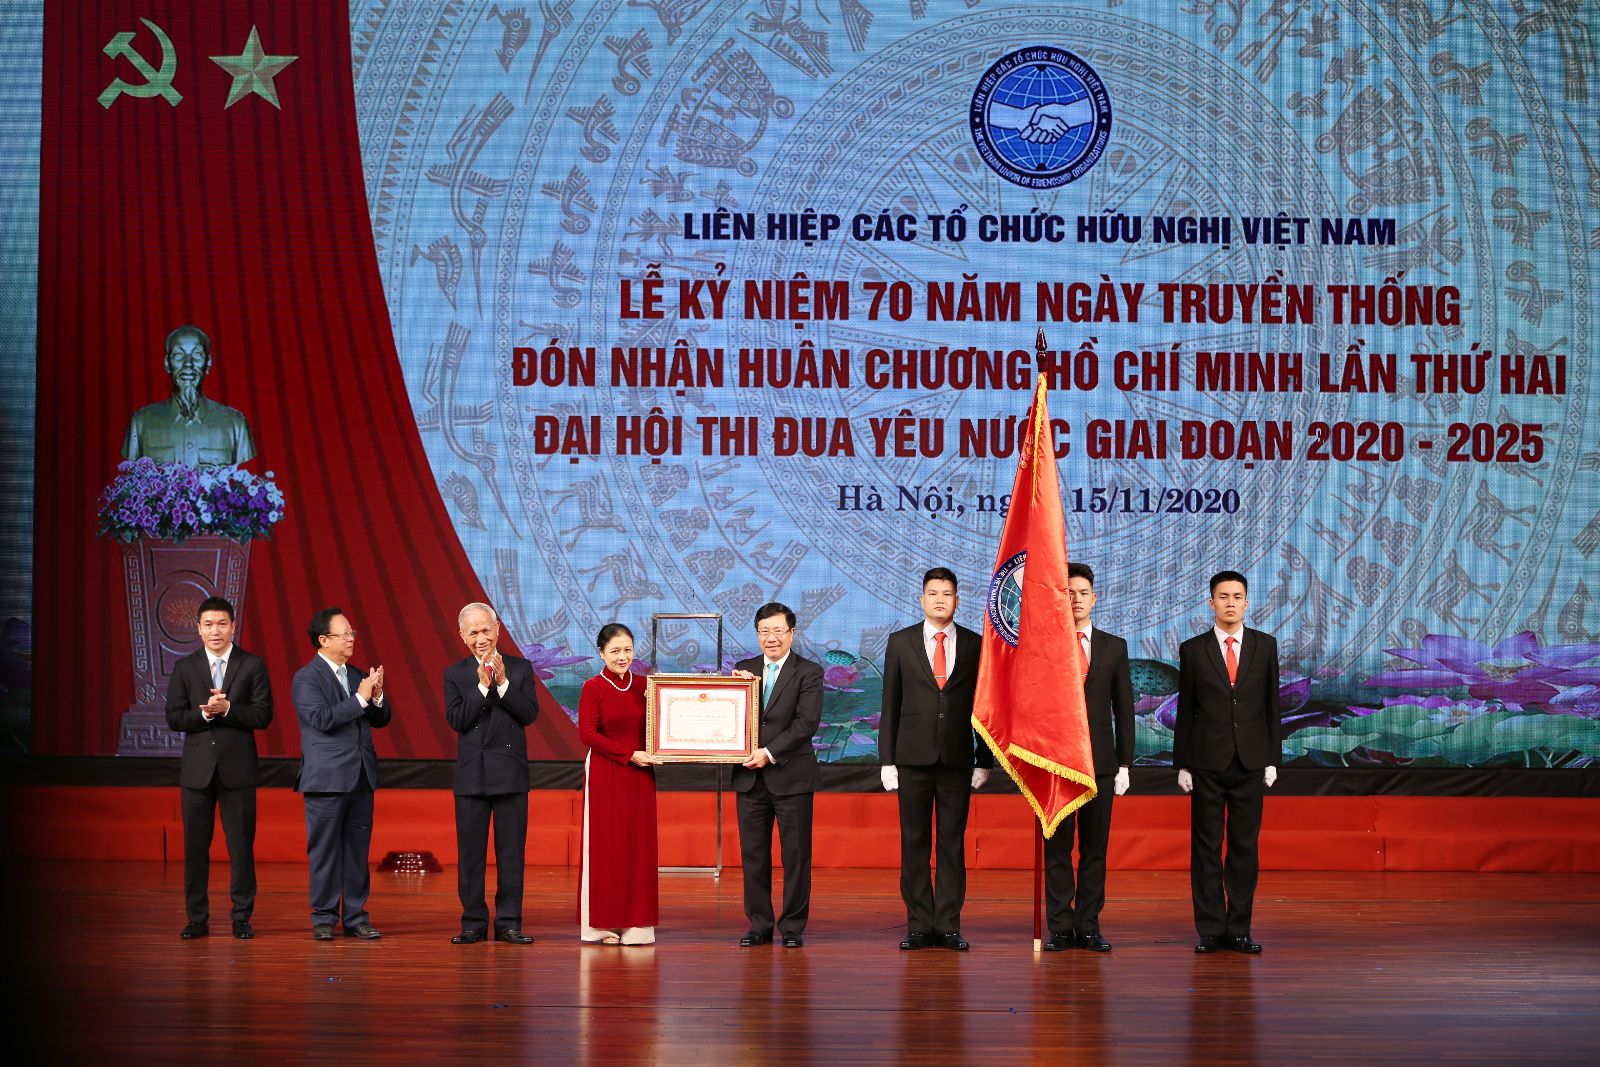 Liên hiệp các tổ chức hữu nghị Việt Nam - 71 năm trưởng thành và ...